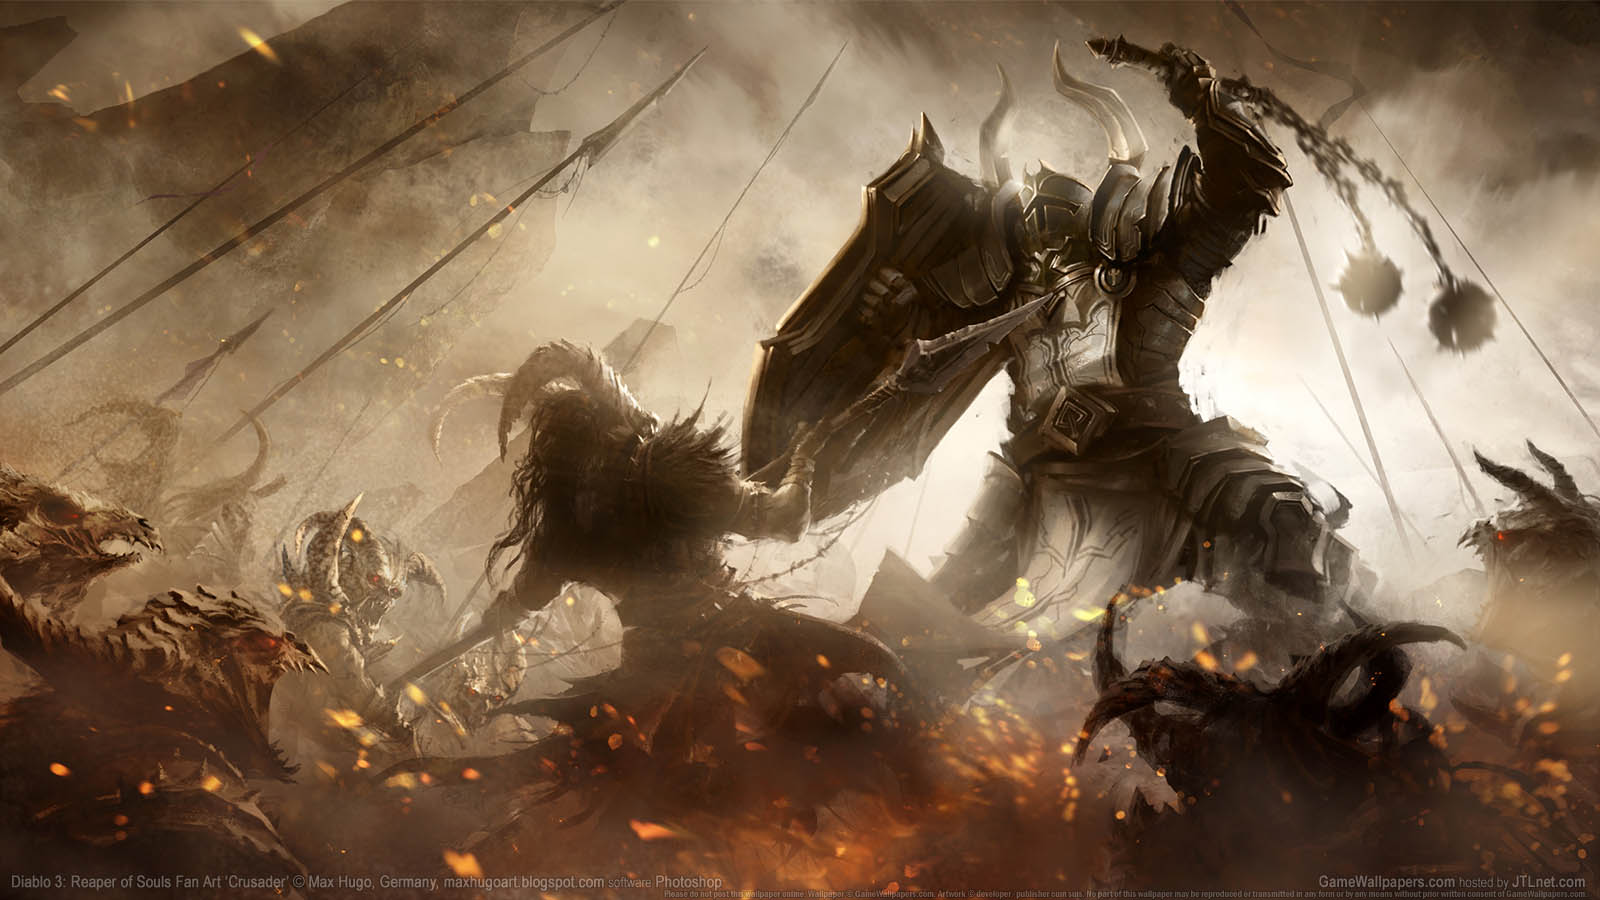 Diablo 3: Reaper of Souls Fan Art achtergrond 10 1600x900